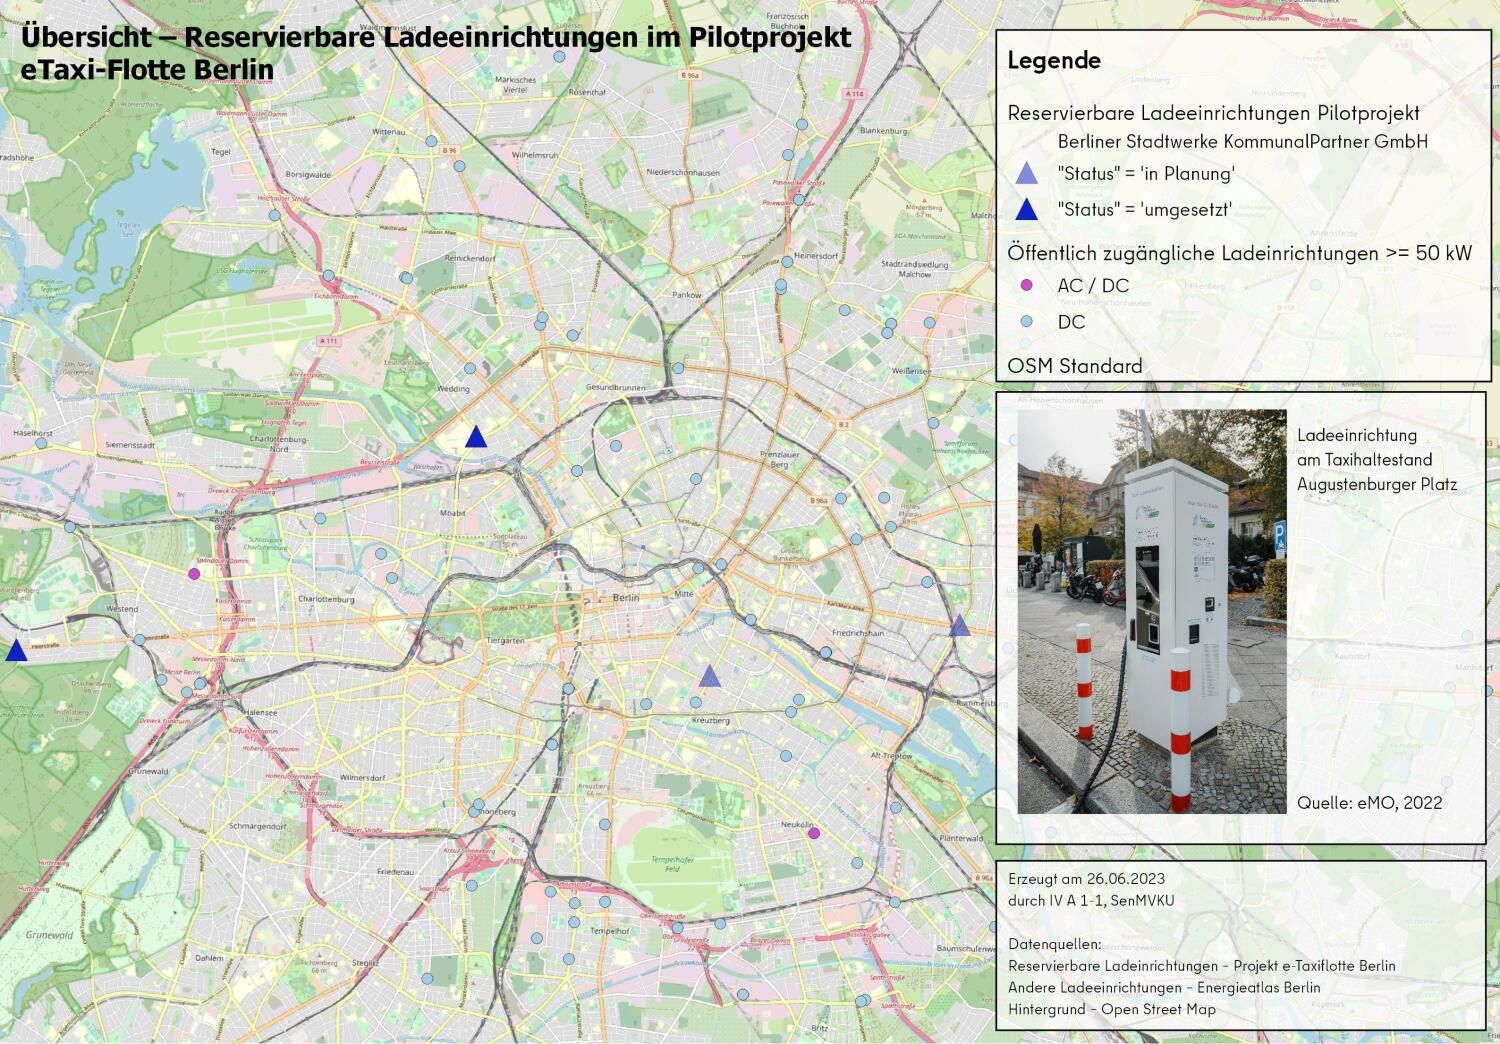 Übersichtskarte mit reservierbaren Ladeeinrichtungen im Pilotprojekt; E-Taxiladesäule am Augustenburger Platz